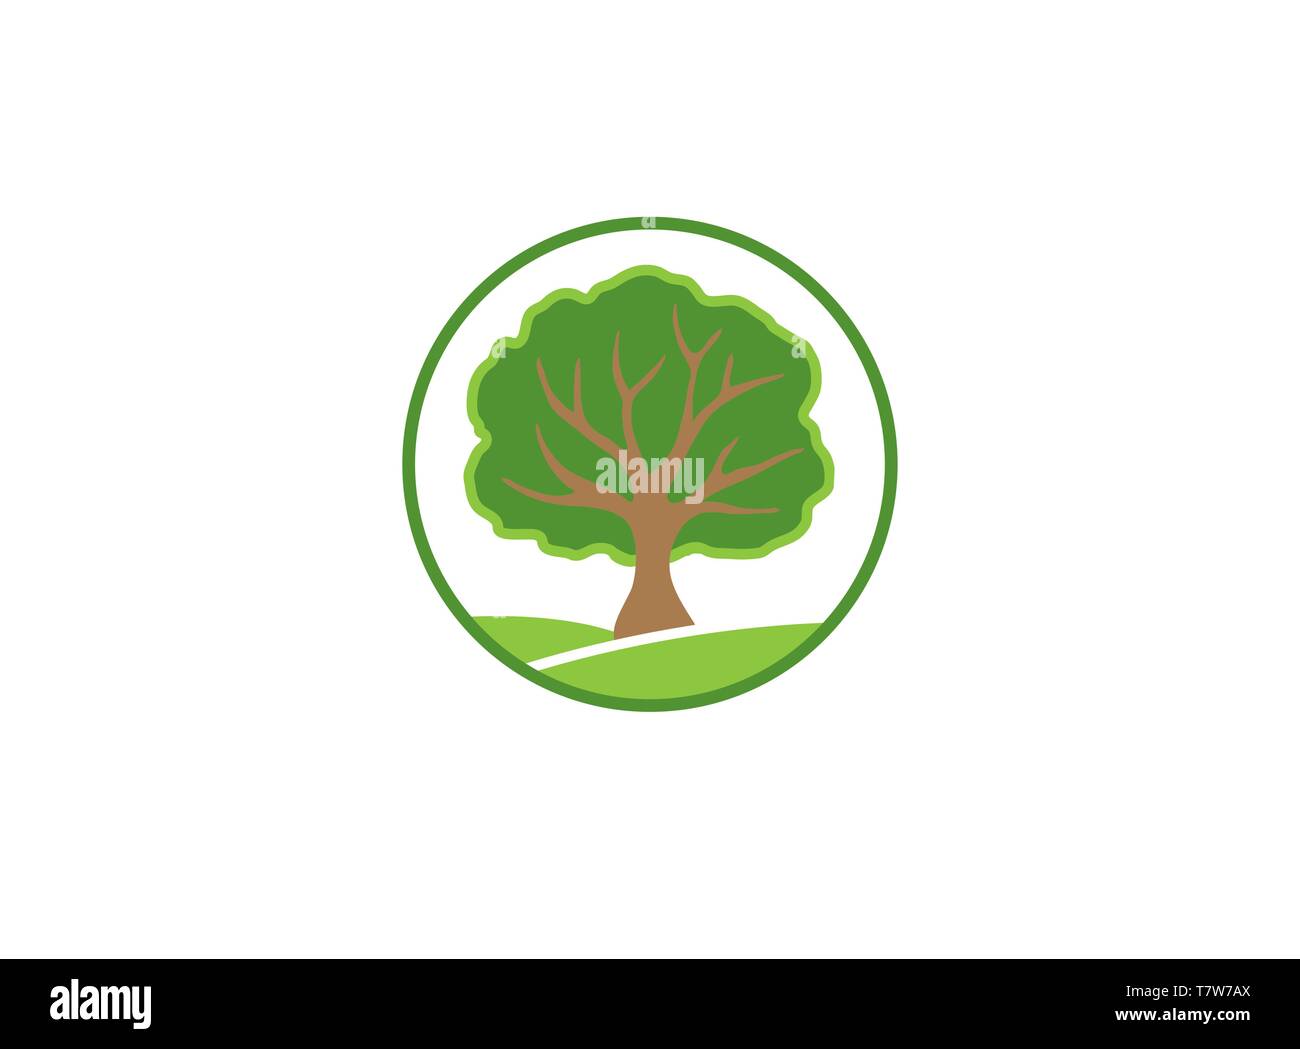 Baum Kreis ein blättrige Baum auf einem grünen Plateau, Zweige Logo Vektor-Design Stock Vektor